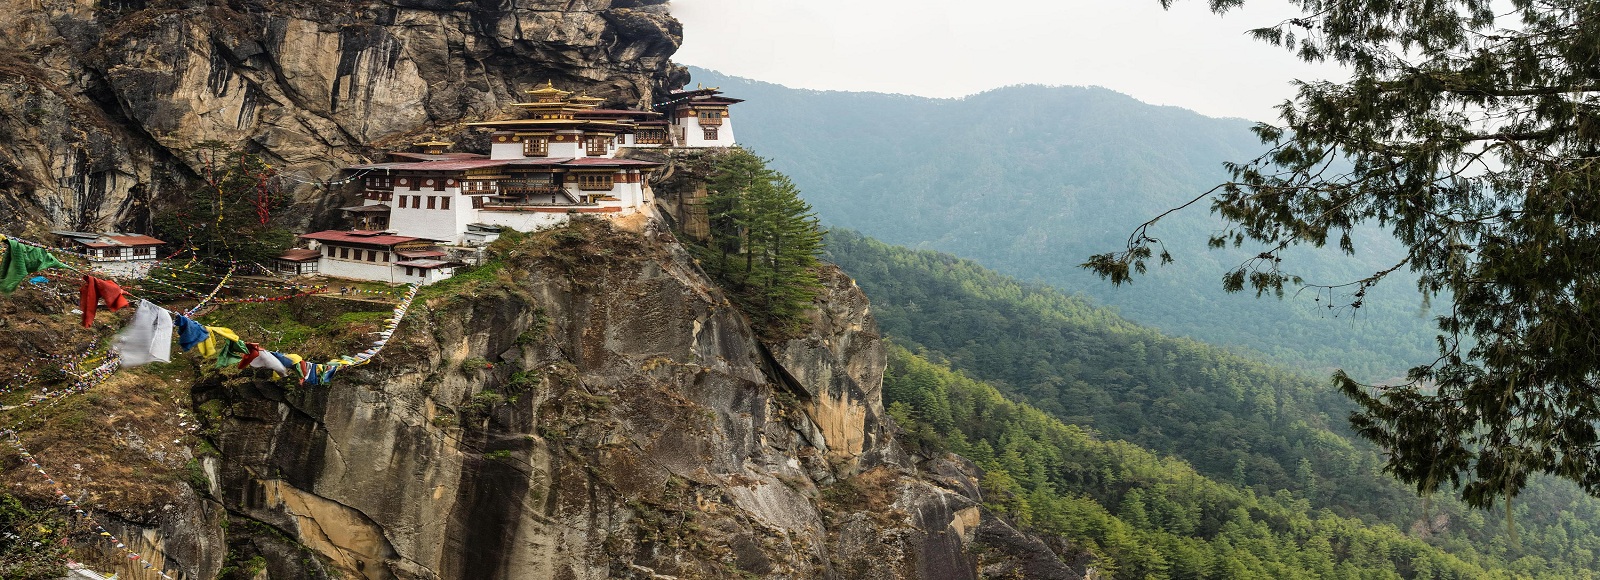 Transfer Offers in Bhutan. Low Cost Transfers in  Bhutan 